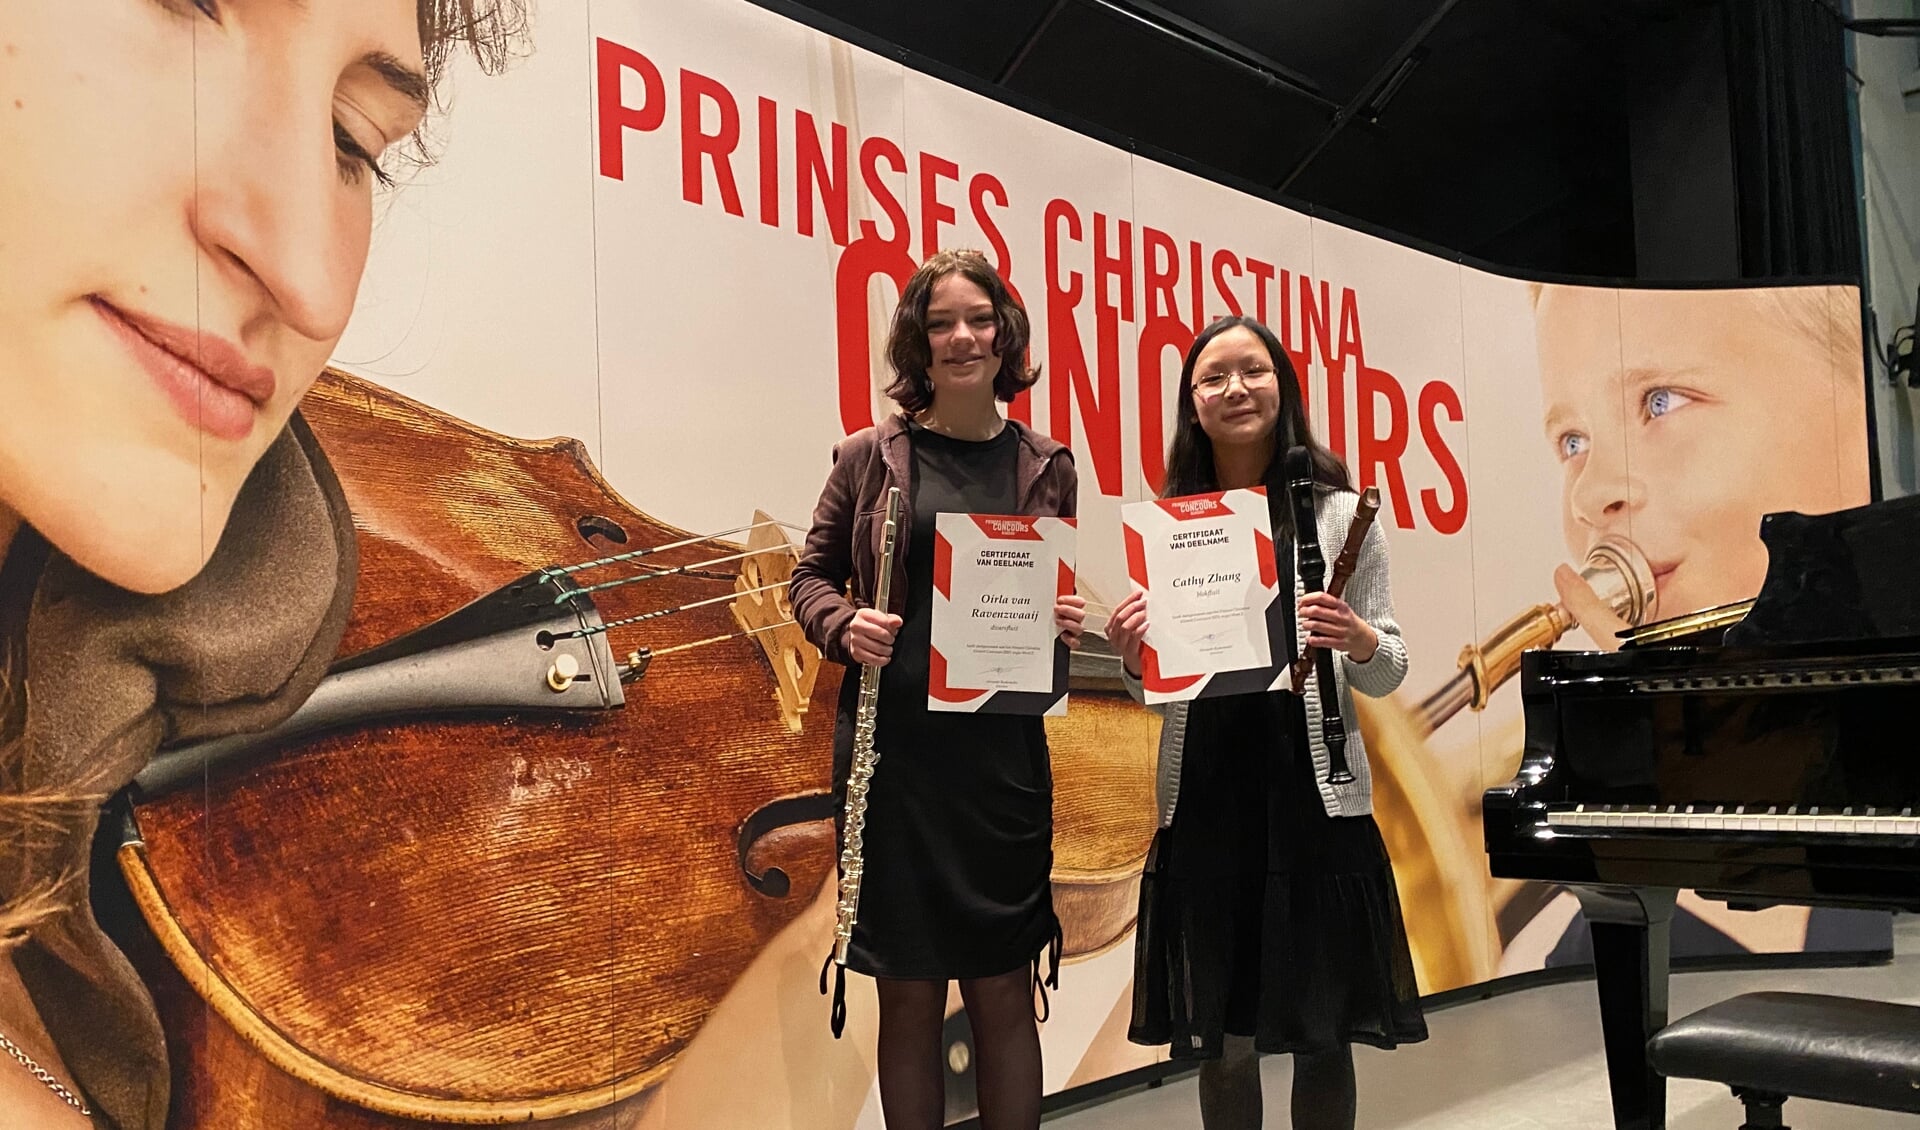 Oirla van Ravenzwaai en Cathy Zhang met hun certificaat. (Foto: aangeleverd)